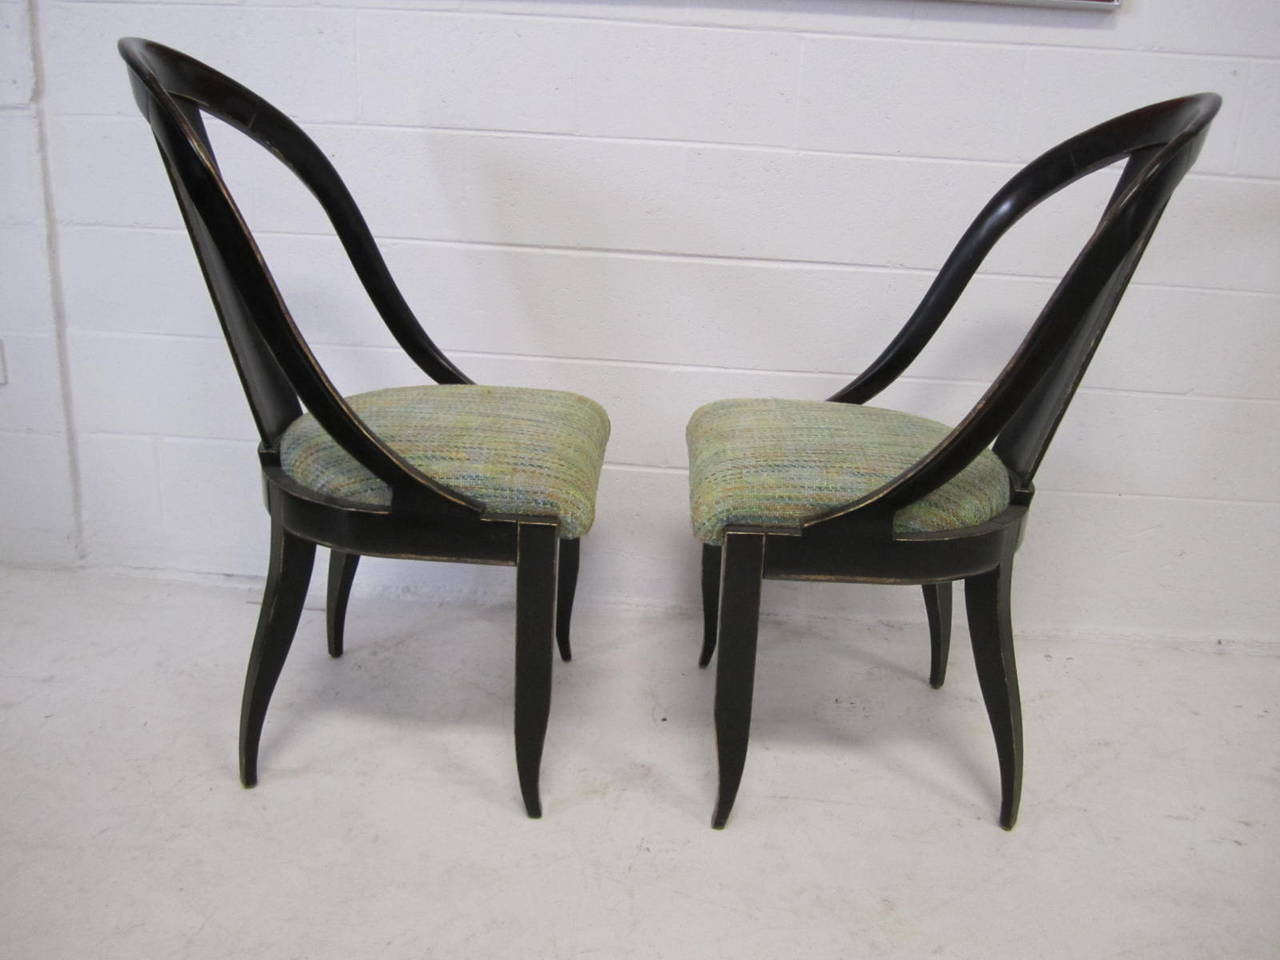 Sensuelle paire de chaises latérales à dossier en cuillère fabriquées par Swaim. D'une échelle et d'un savoir-faire magnifiques, ces chaises sont spectaculaires en personne. La finition est une laque très sombre, presque noire, avec un peu de grain